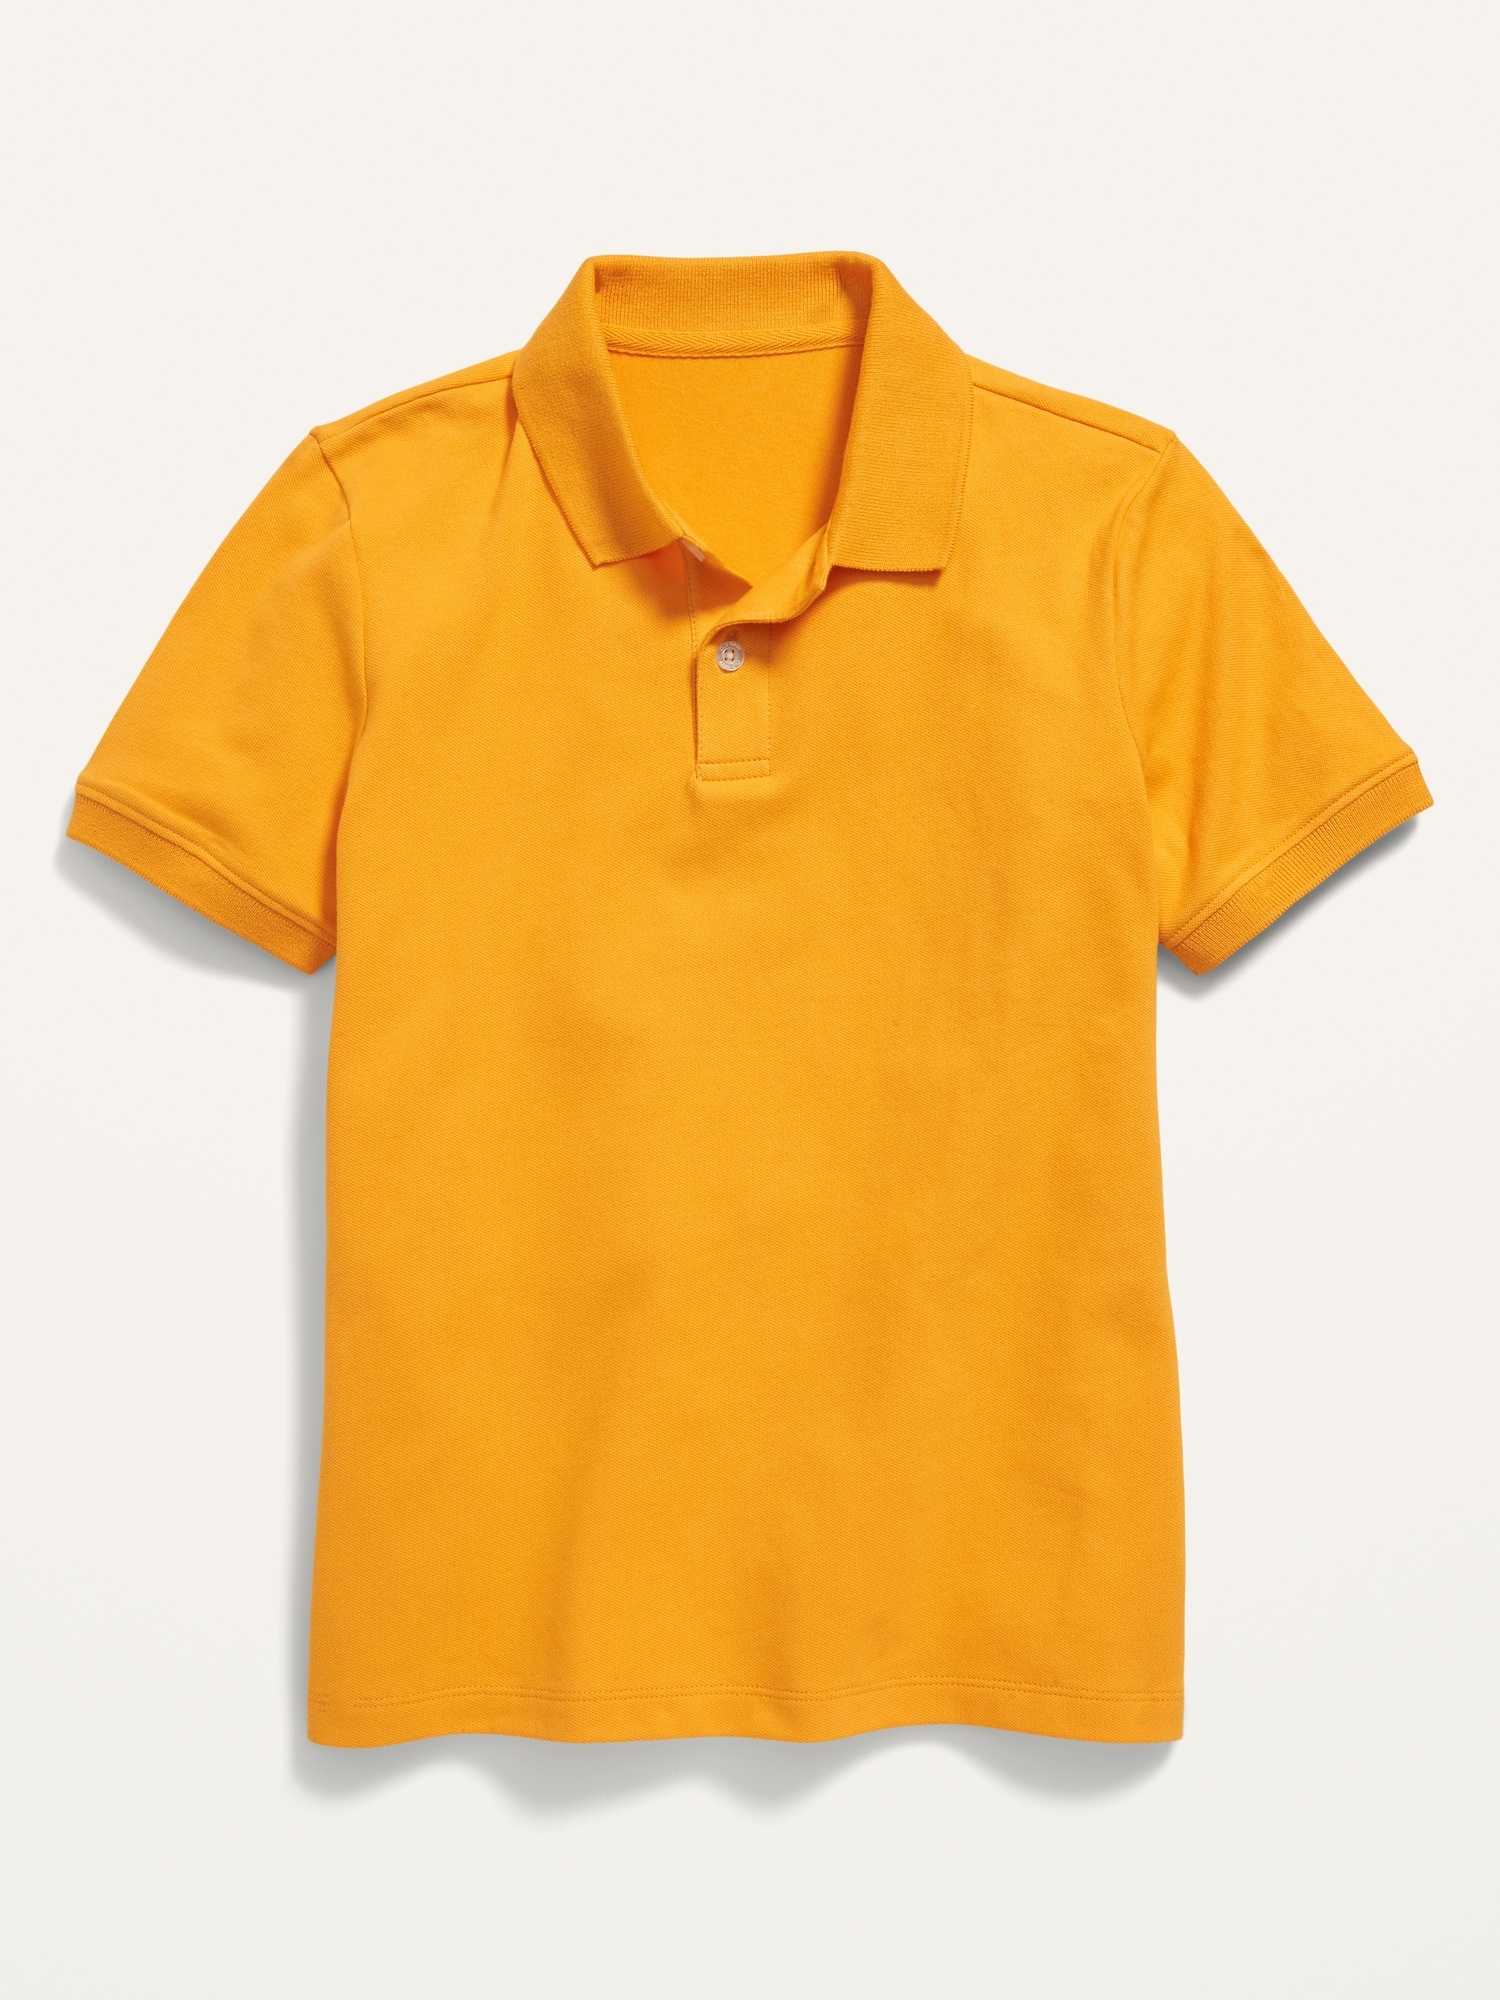 Old Navy School Uniform Pique Polo Shirt for Boys orange. 1